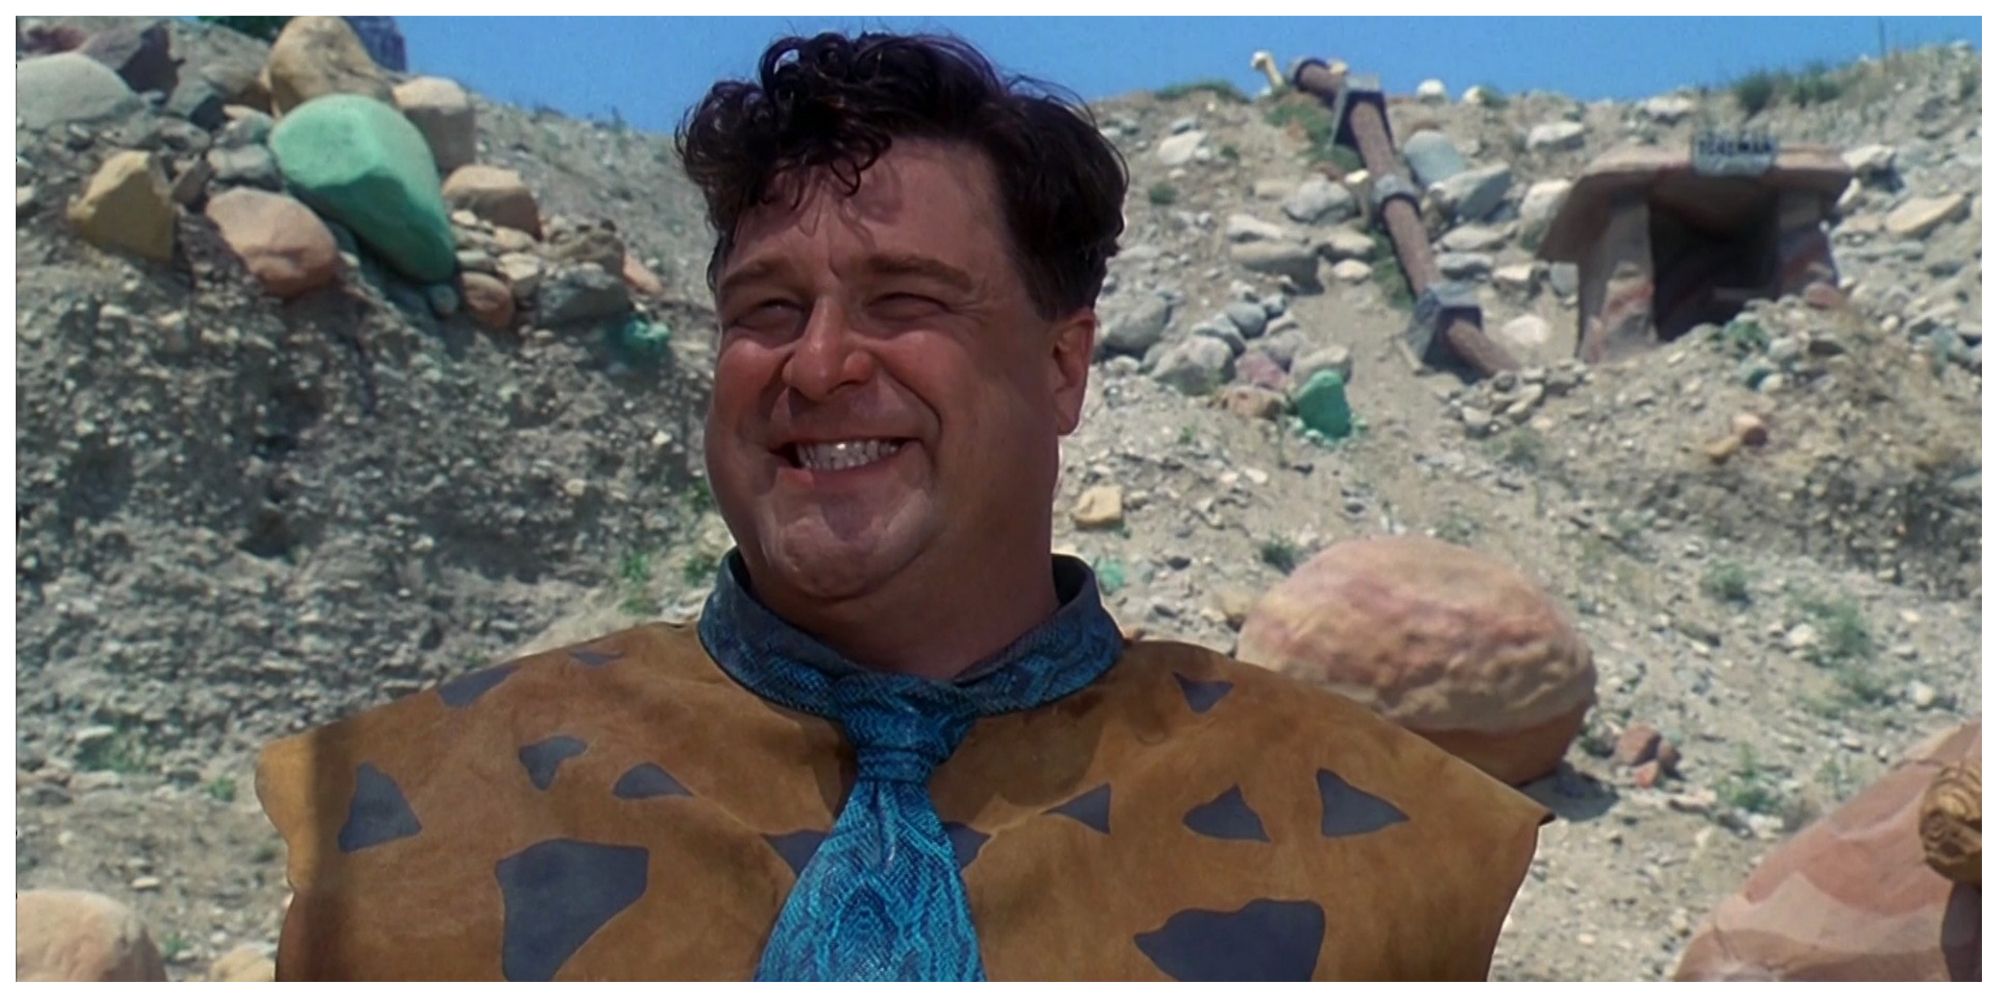 John Goodman as Fred Flintstone in The Flinstones (1994)